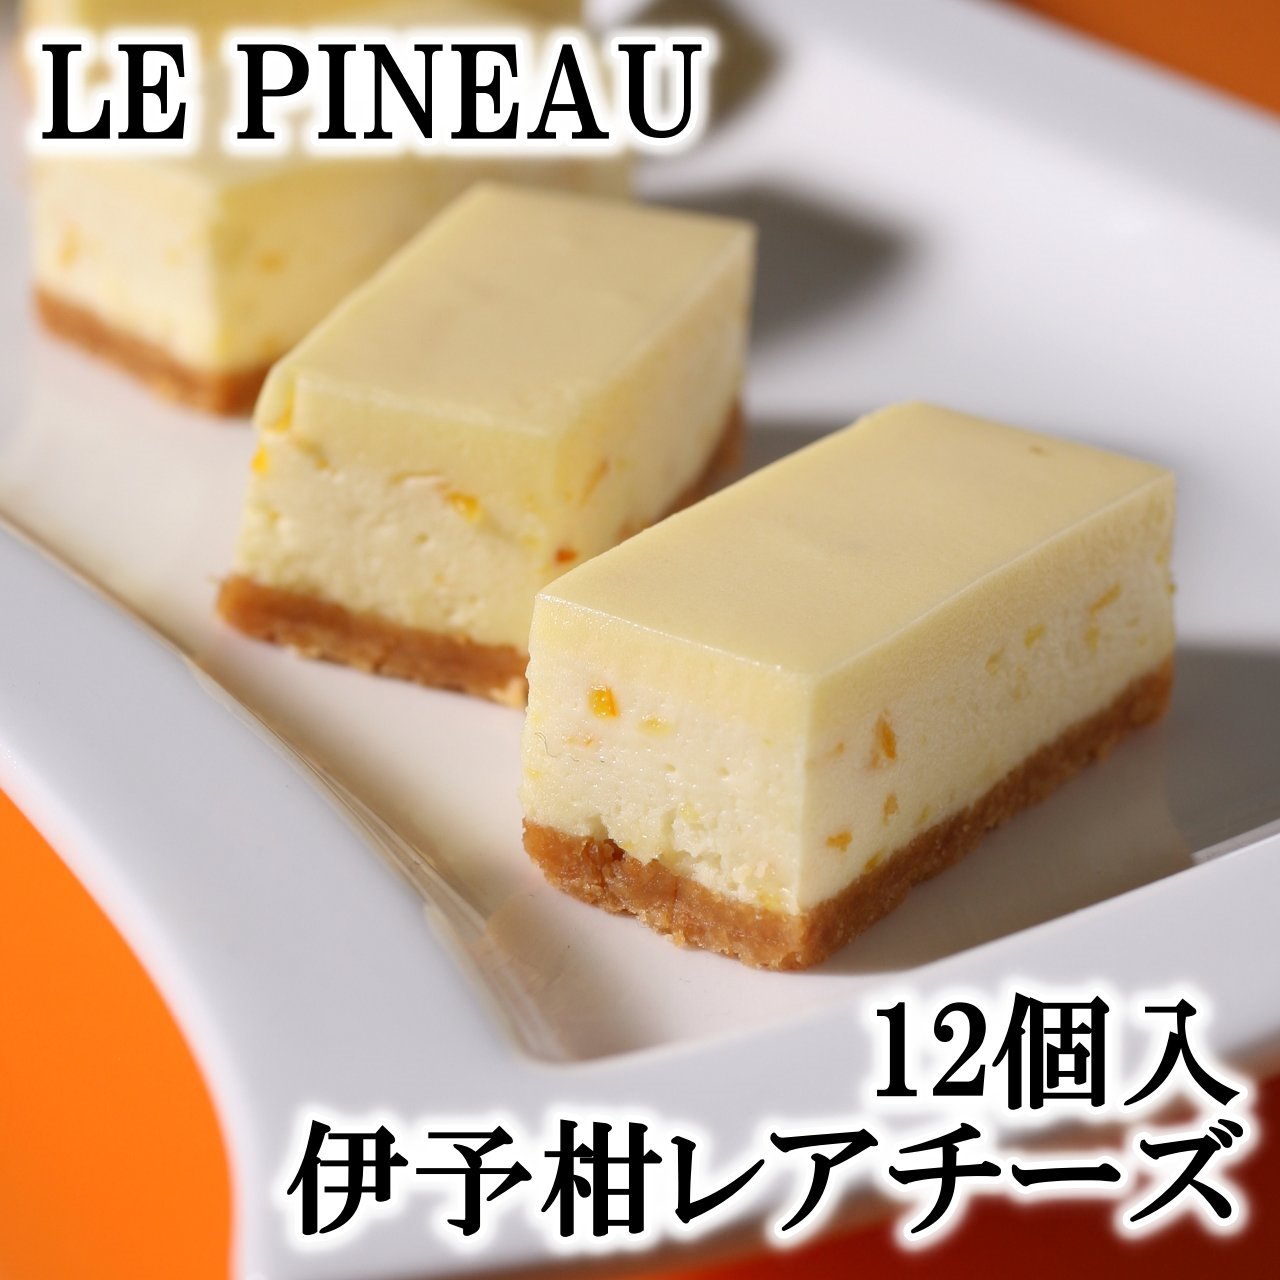 楽天市場 ルピノー 菓一座 伊予柑レアチーズ 10個入 ジェラート 焼き菓子の店ルピノー